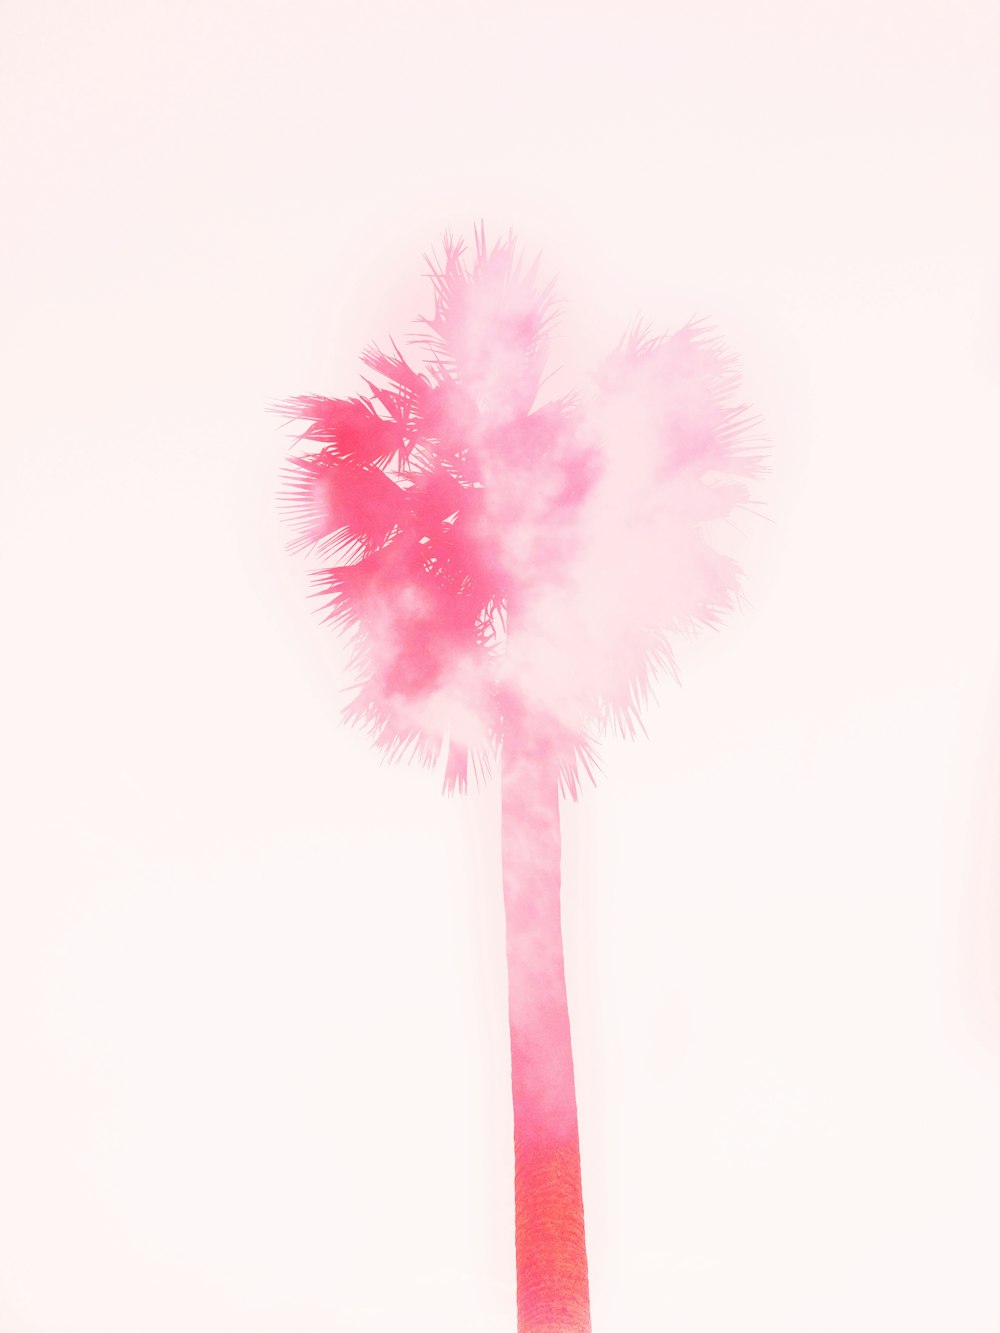 un palmier avec de la fumée rose qui en sort